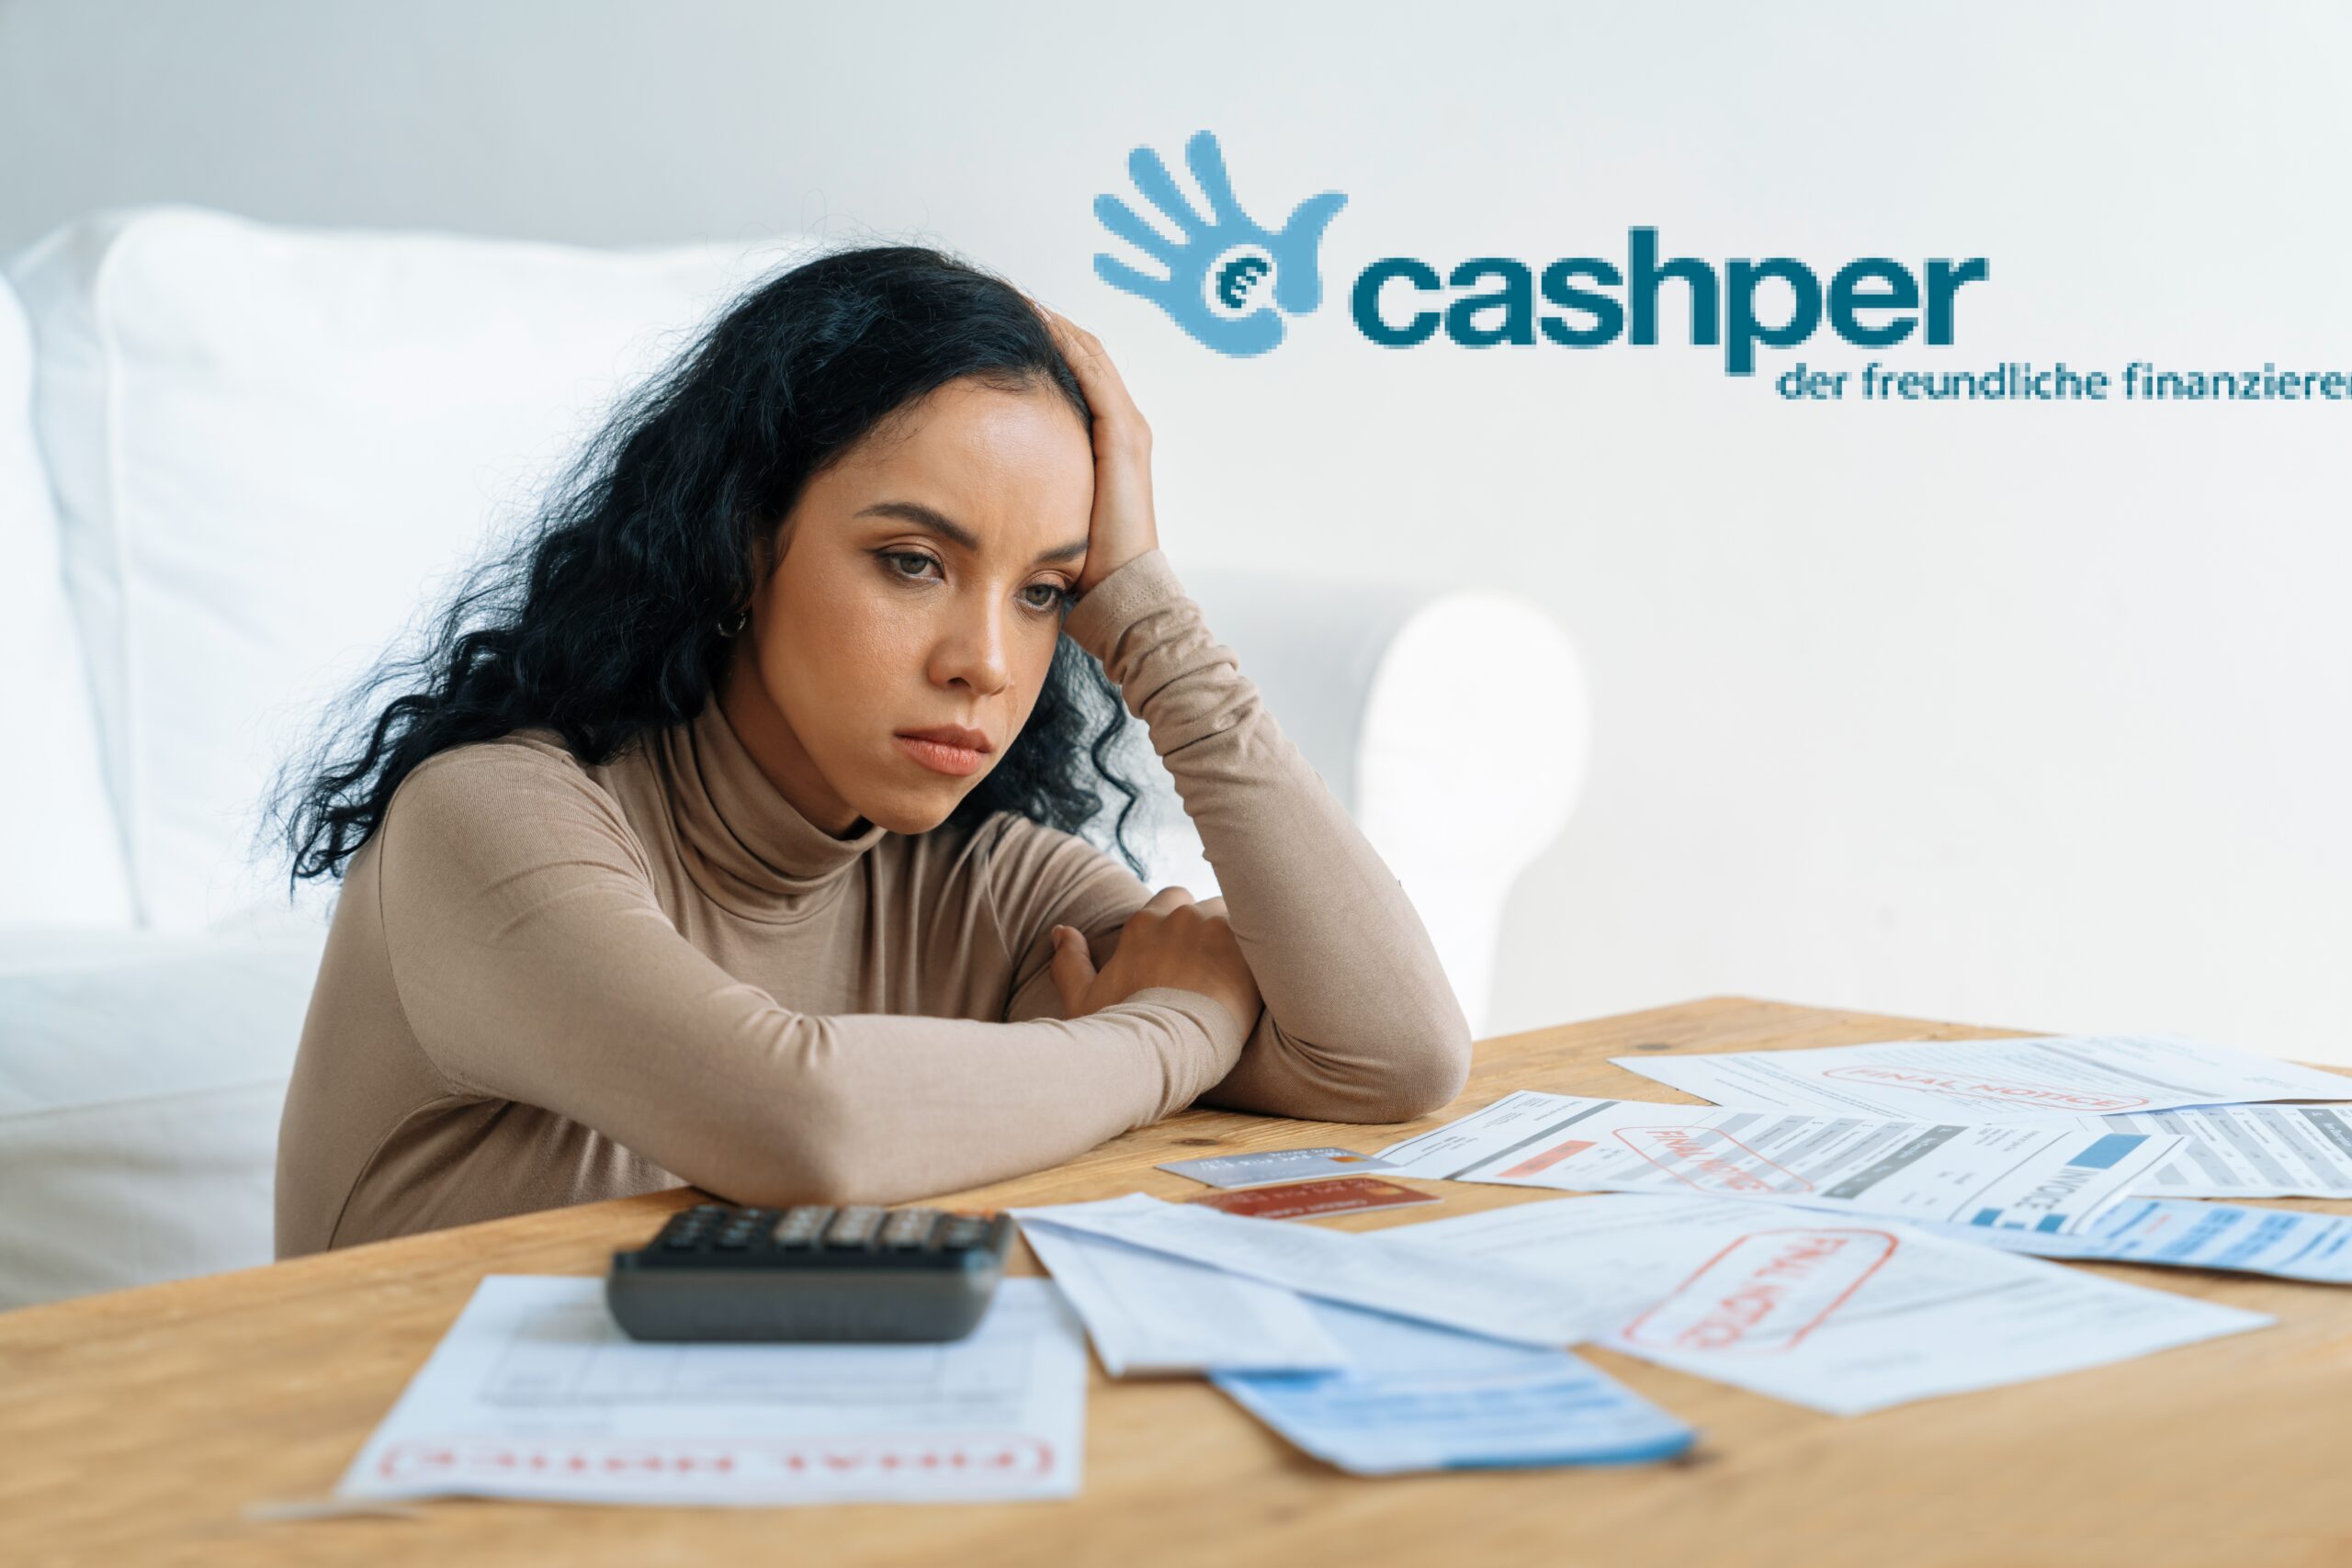 Imagen de una mujer angustiada por sus deudas y facturas, simbolizando el impacto de ser incluida en el registro de morosos por Cashper
